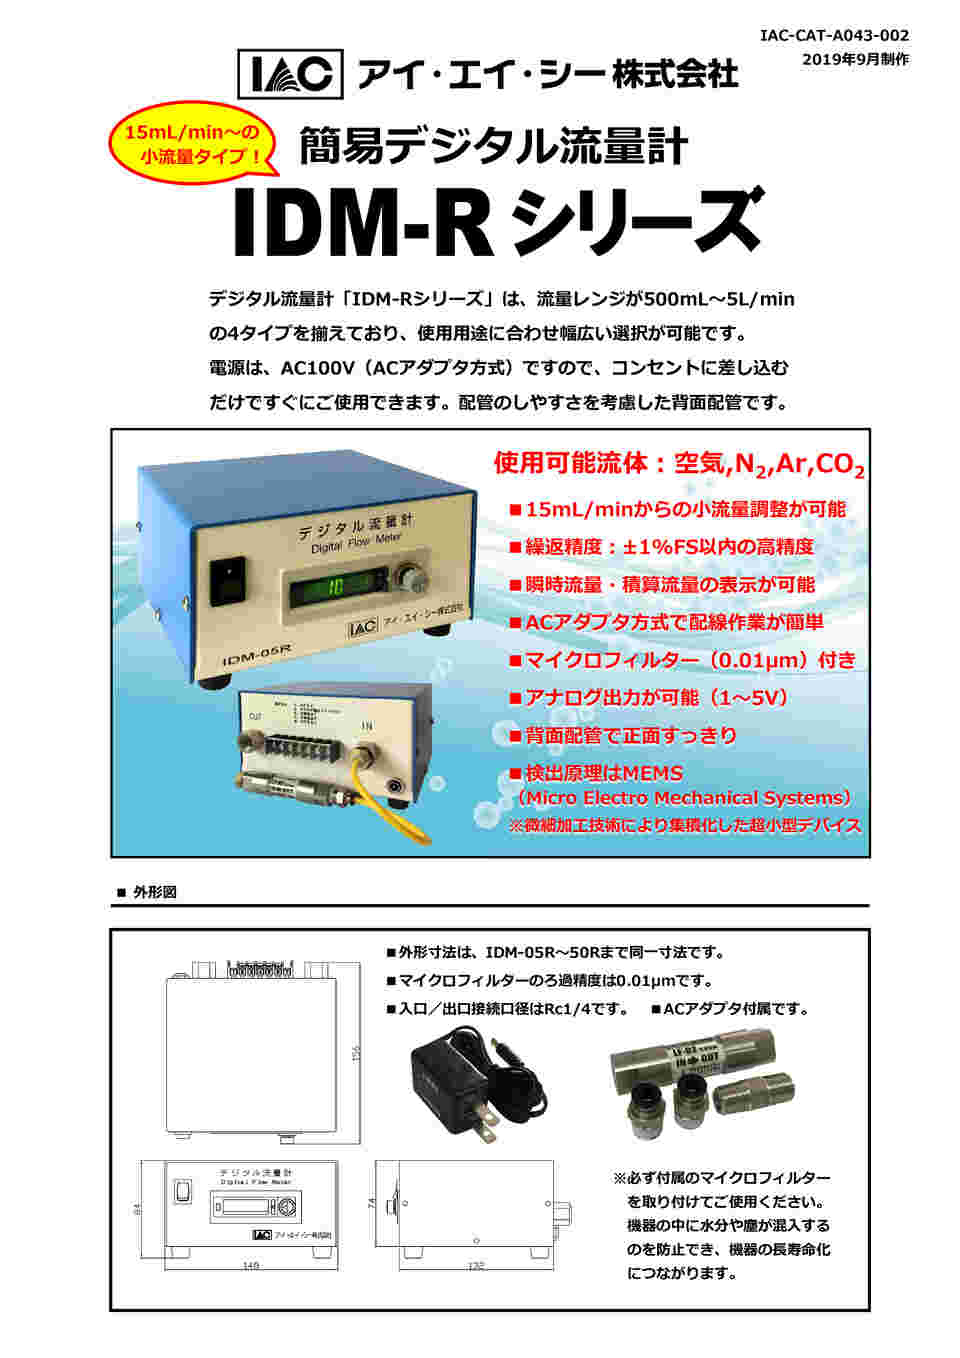 アイ・エイ・シー デジタル流量計 IDS-100A